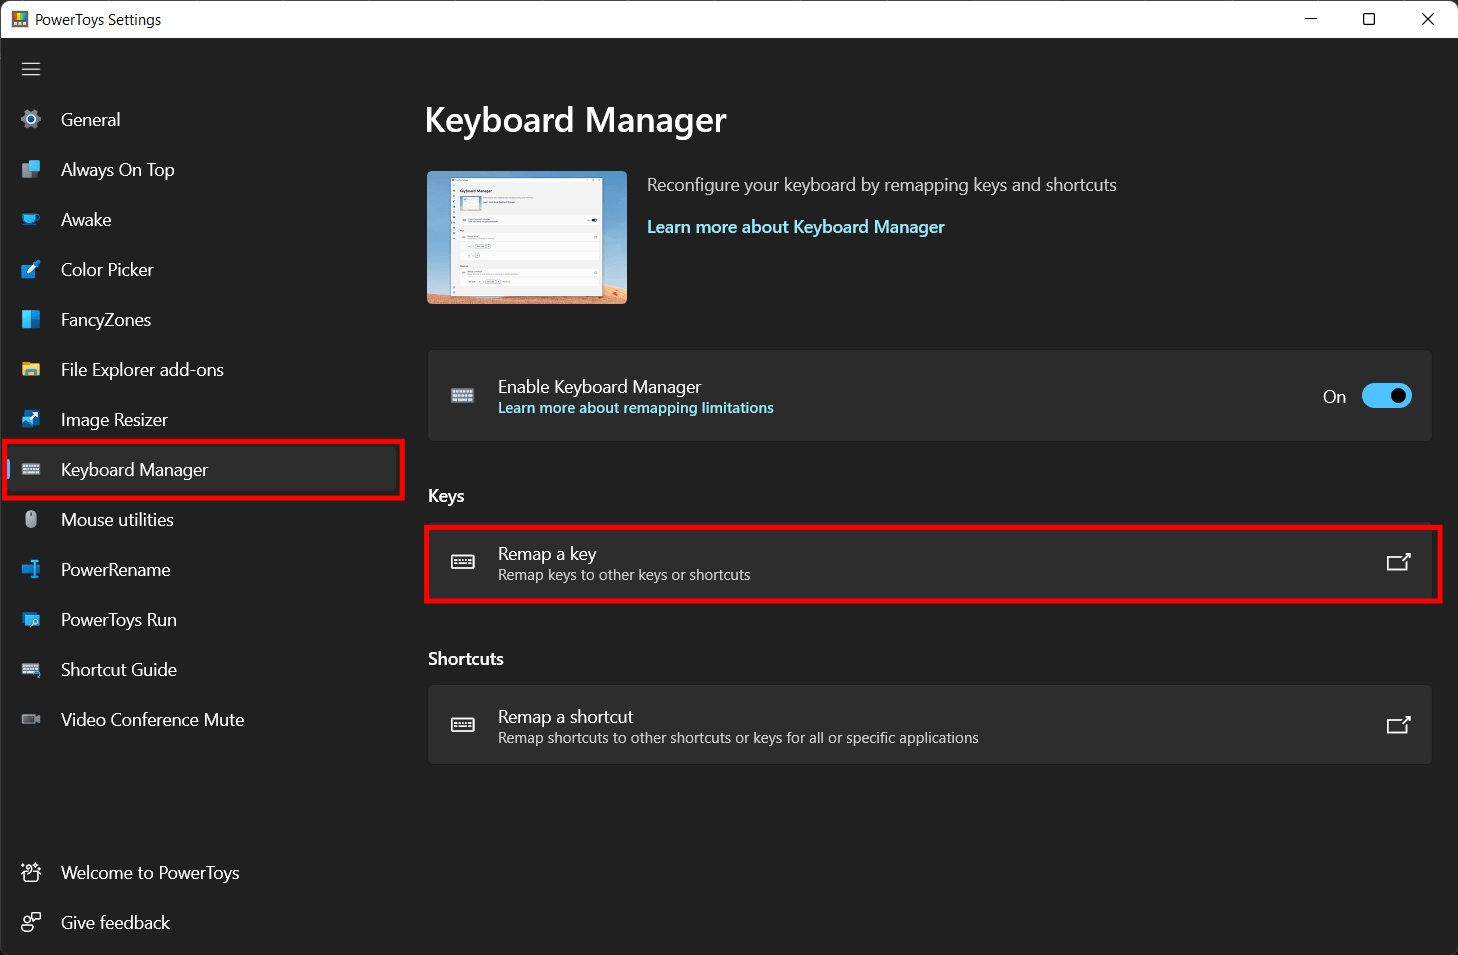 Keyboard Manager menu in PowerToys